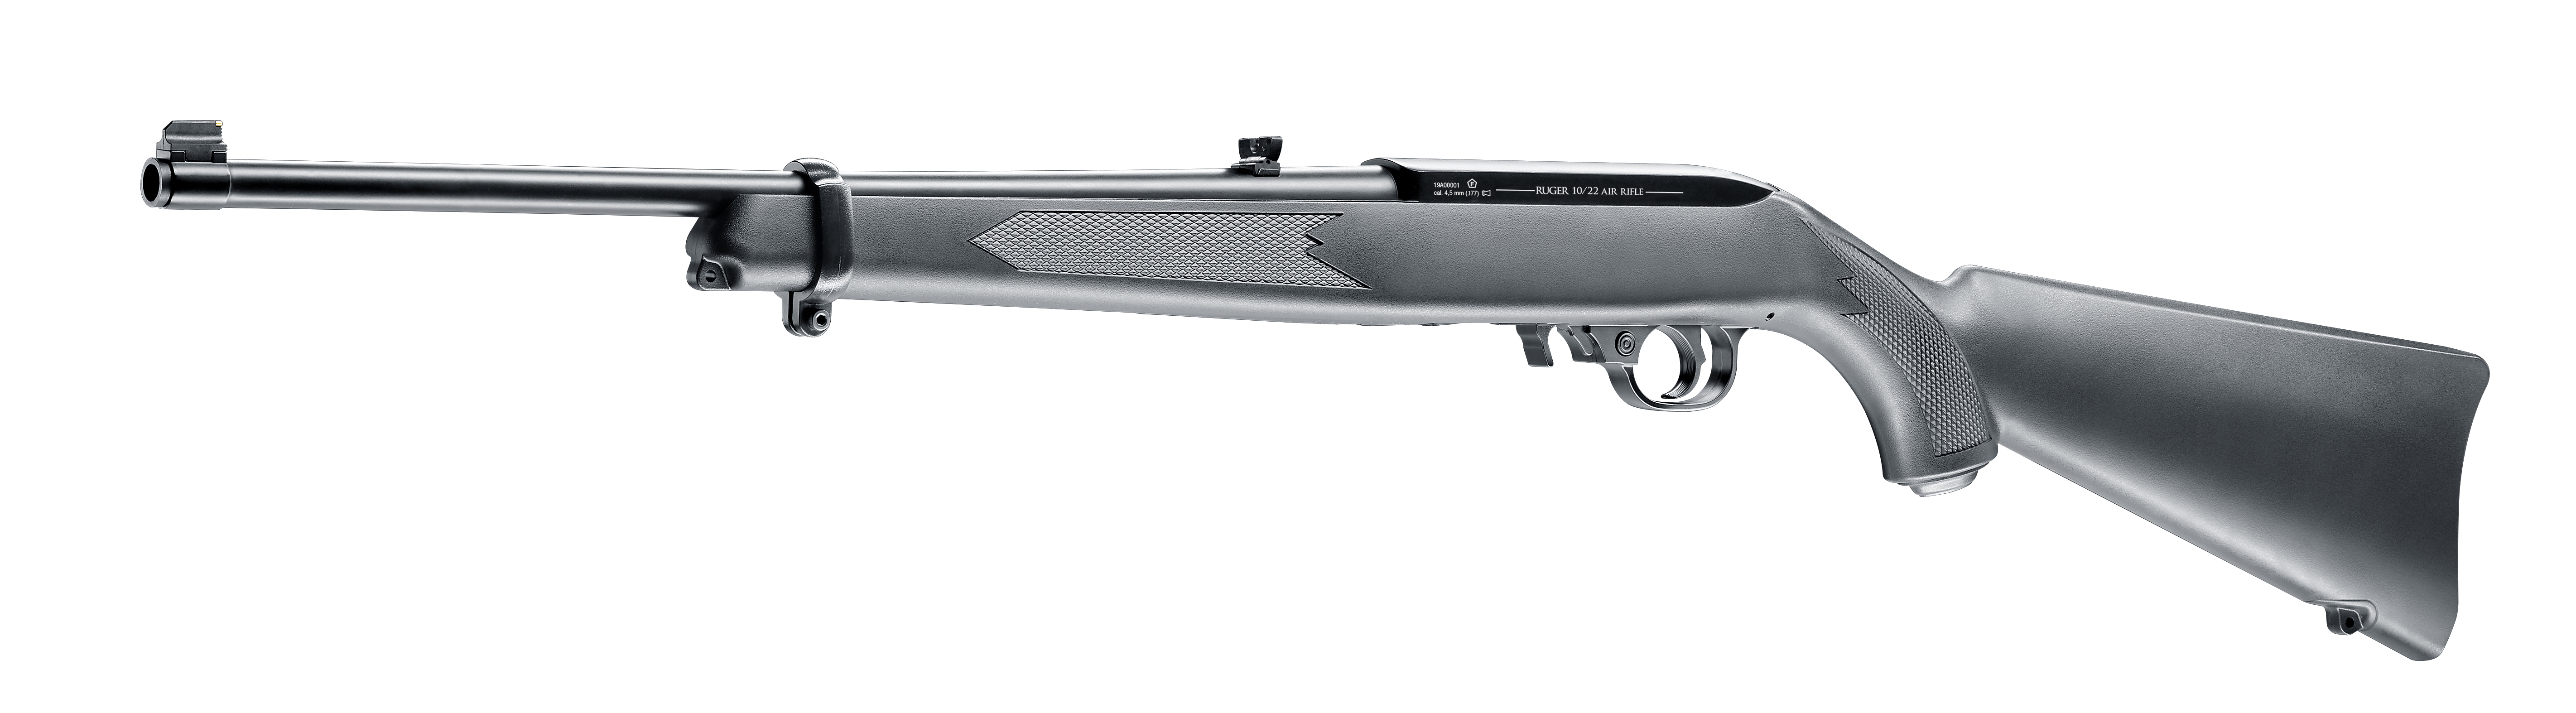 Ruger 10/22 CO2-Gewehr in 4,5 mm (.177) Diabolo, perspektivische Ansicht von links